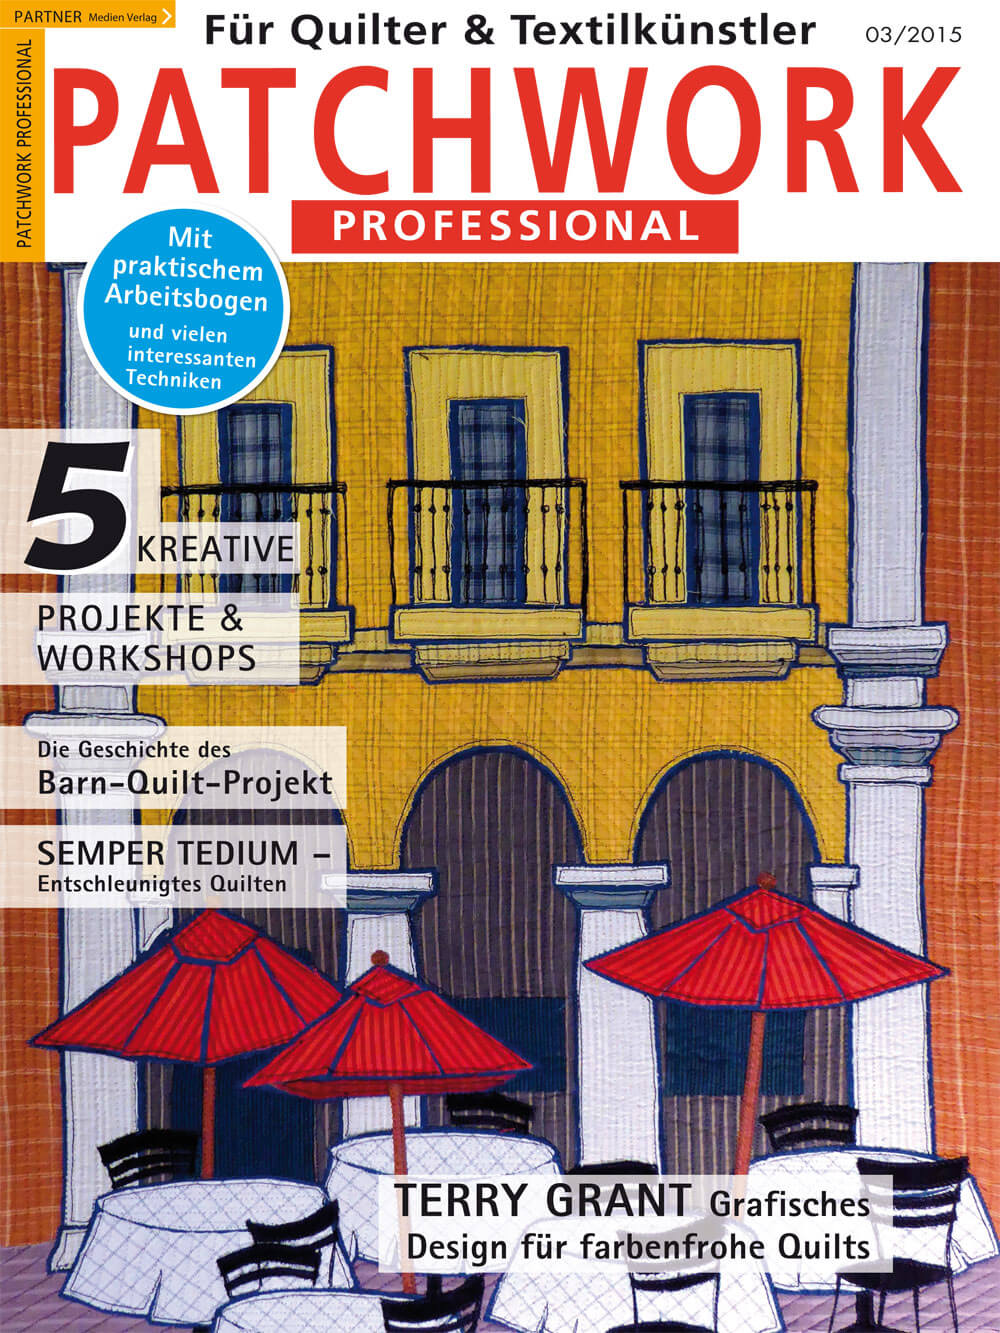 Titelseite der Patchwork Professional 3/2015